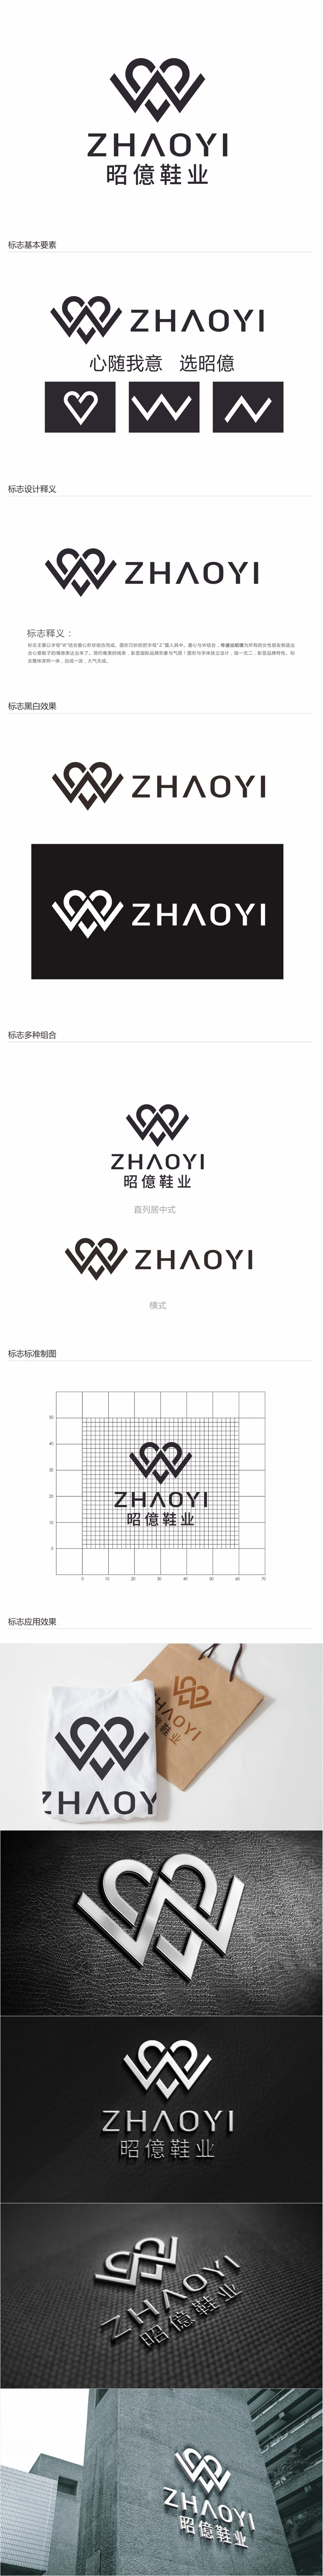 唐国强的昭億鞋业logo设计